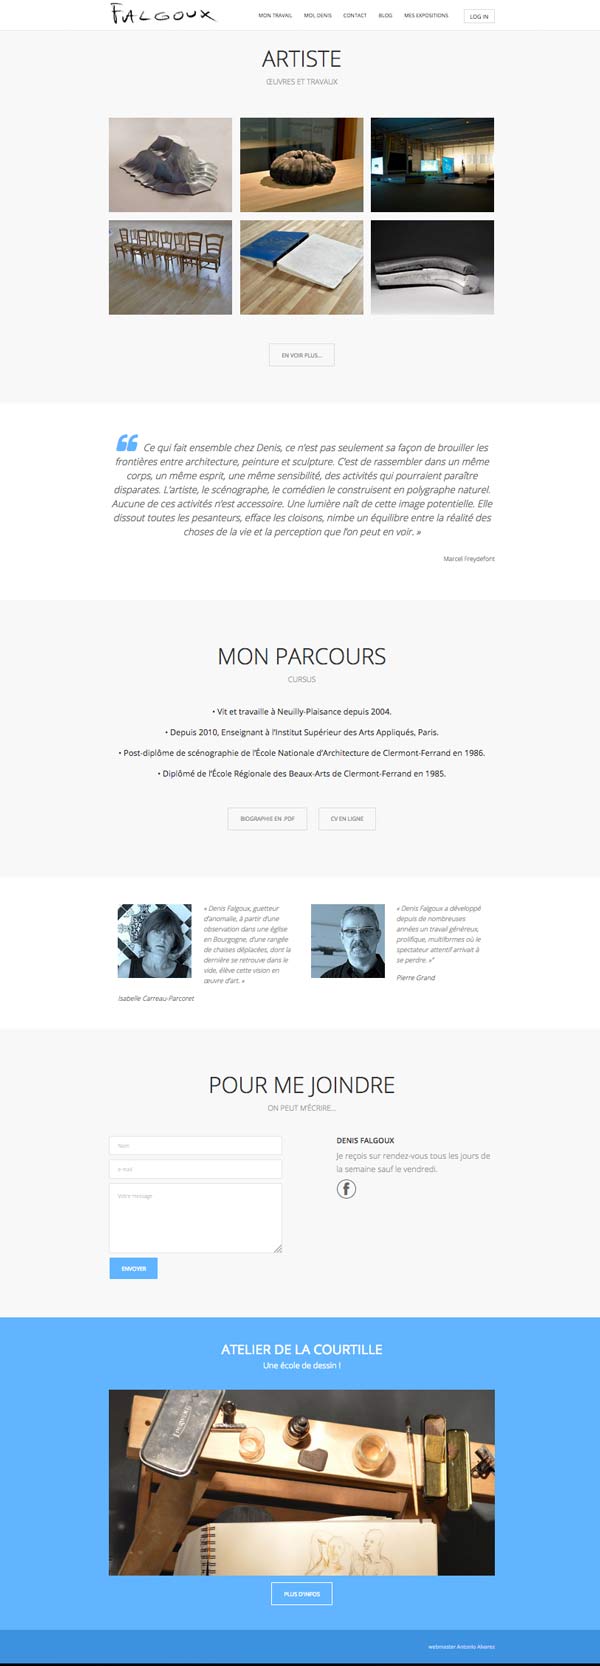 Antonio Alvarez - Réalisation Site internet/blog pour Denis Falgoux, artiste plasticien Homepage